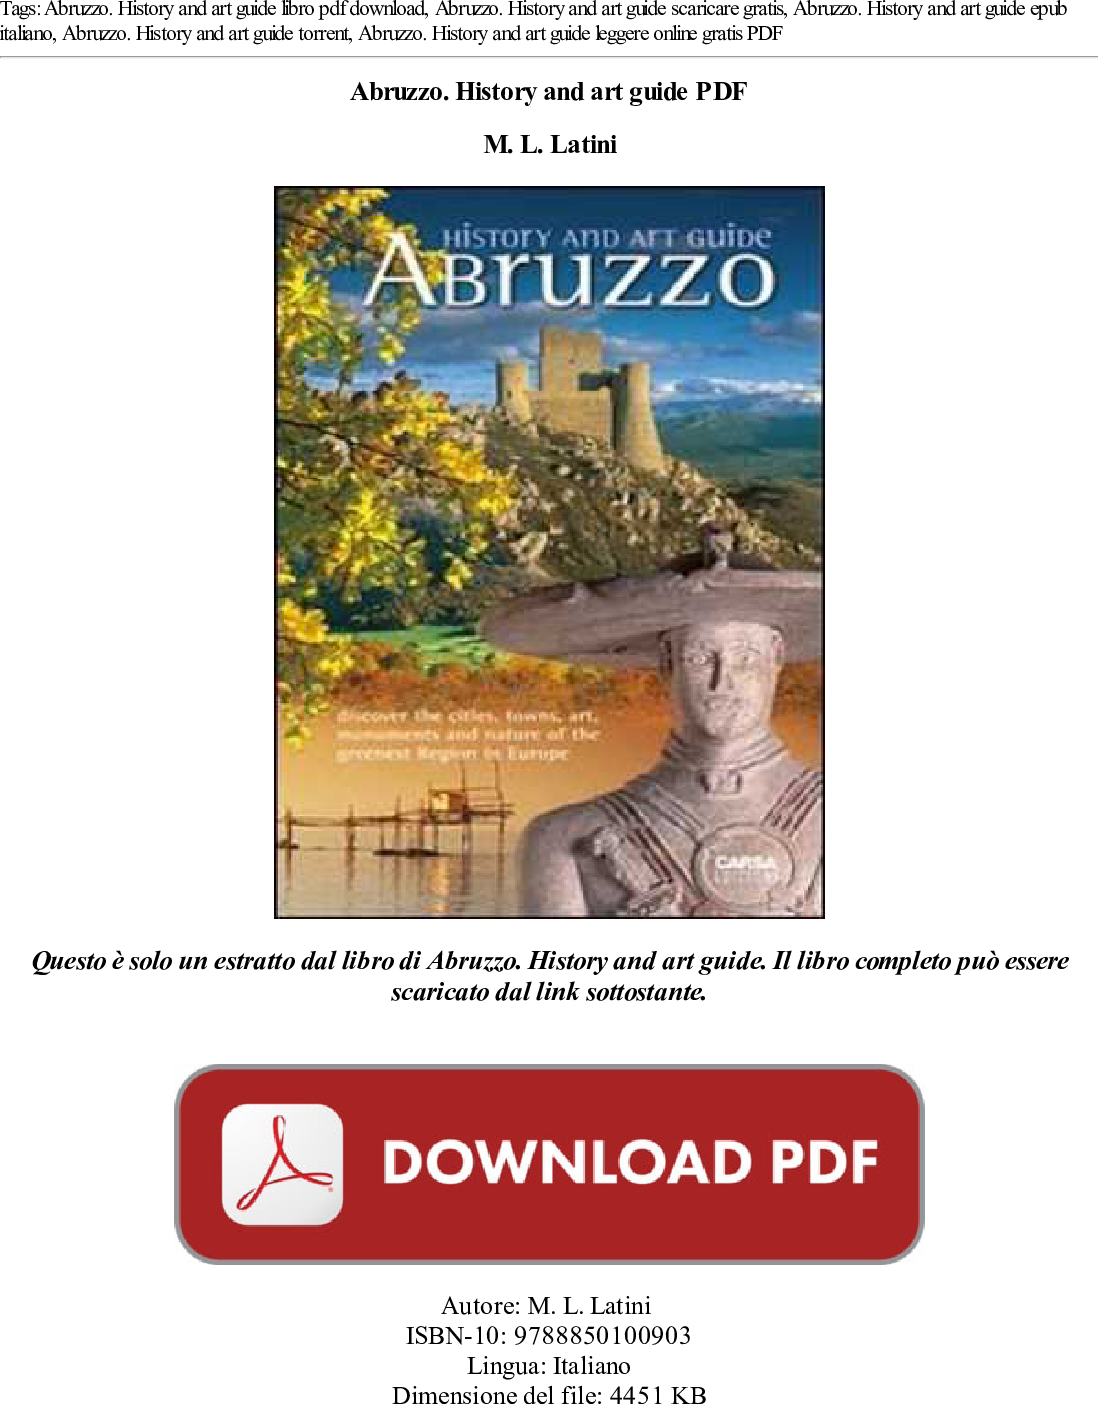 Abruzzo History And Art Guide Pdf Libro 8md1tm6onz Abruzzo Na 8md1tm6onz